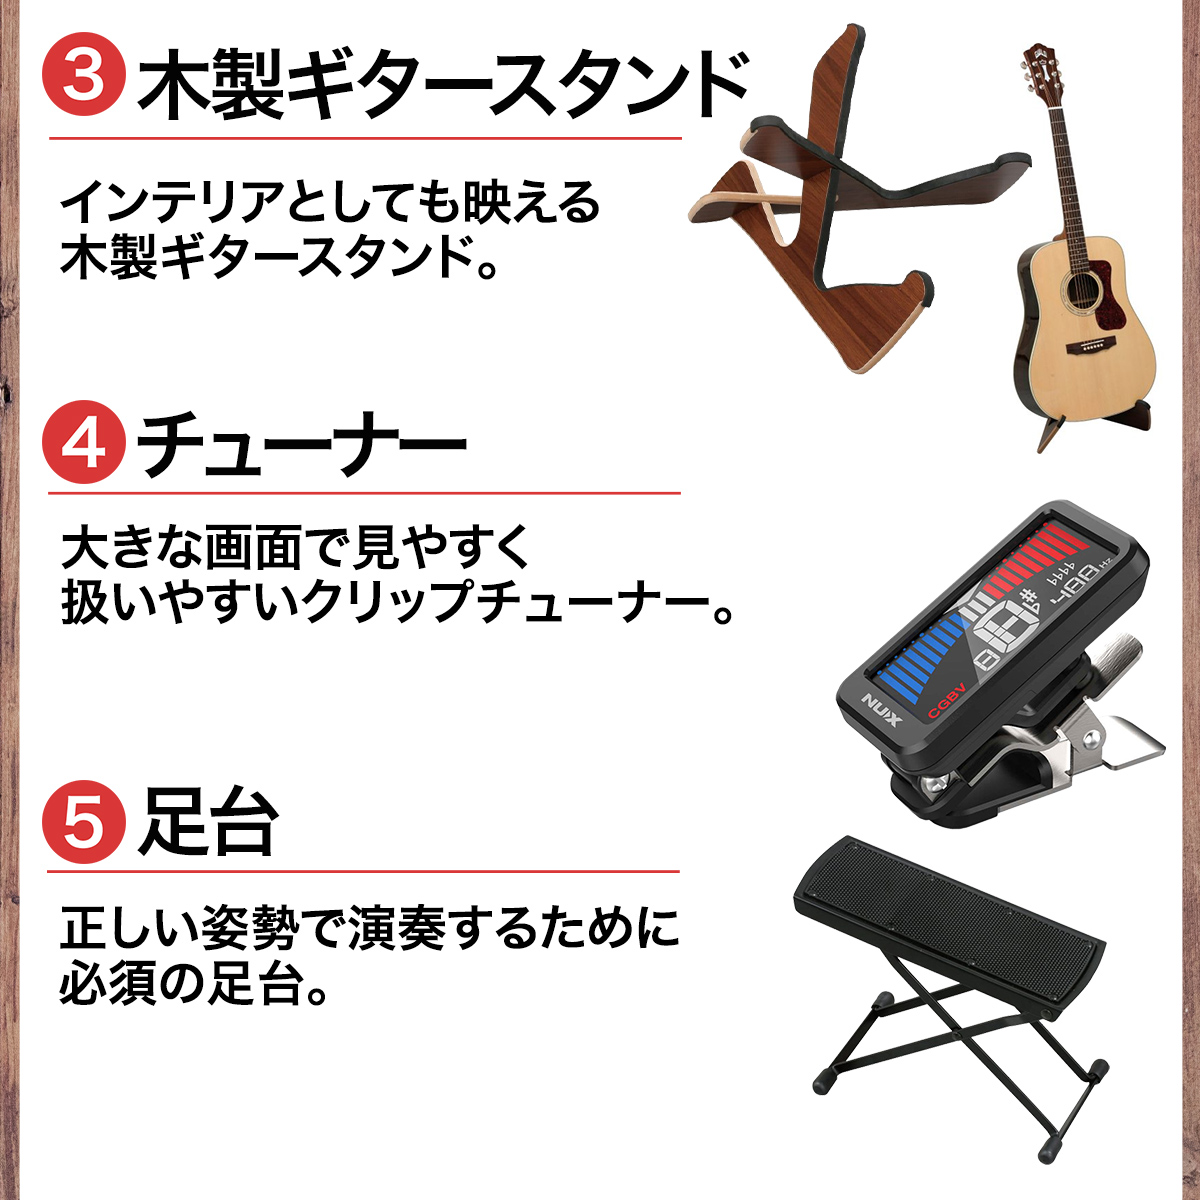 YAMAHA CG102 クラシックギター初心者8点セット 650mm 表板:松／横裏板:ナトー 【ヤマハ】